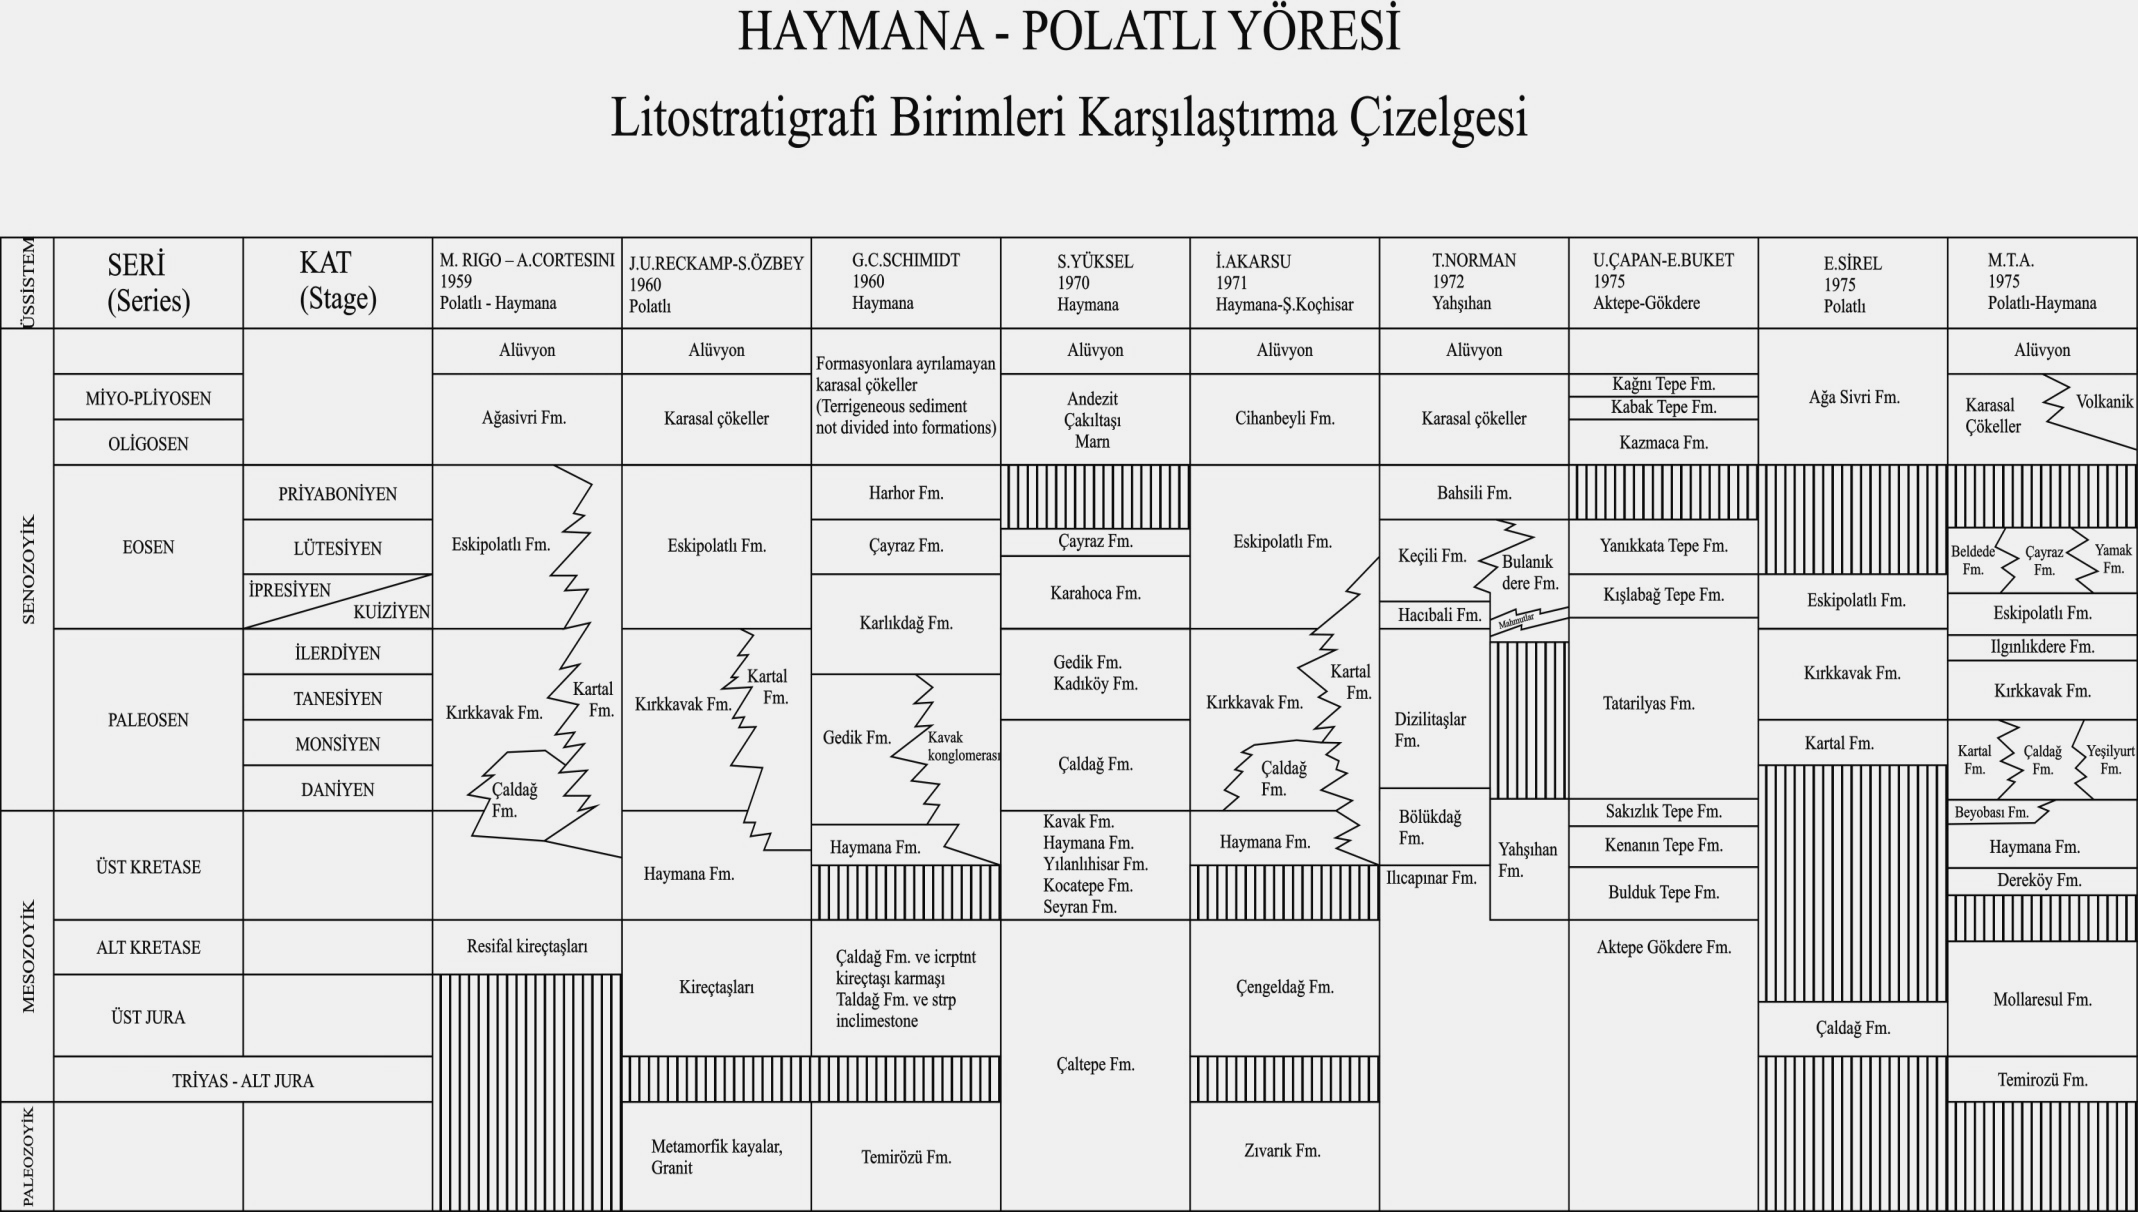 Şekil 11. Haymana- Polatlı Yöresi Litostratigrafi Birimleri Karşılaştırma Çizelgesi (Kaynak: Türkiye Jeoloji Kurumu Bülteni, c.